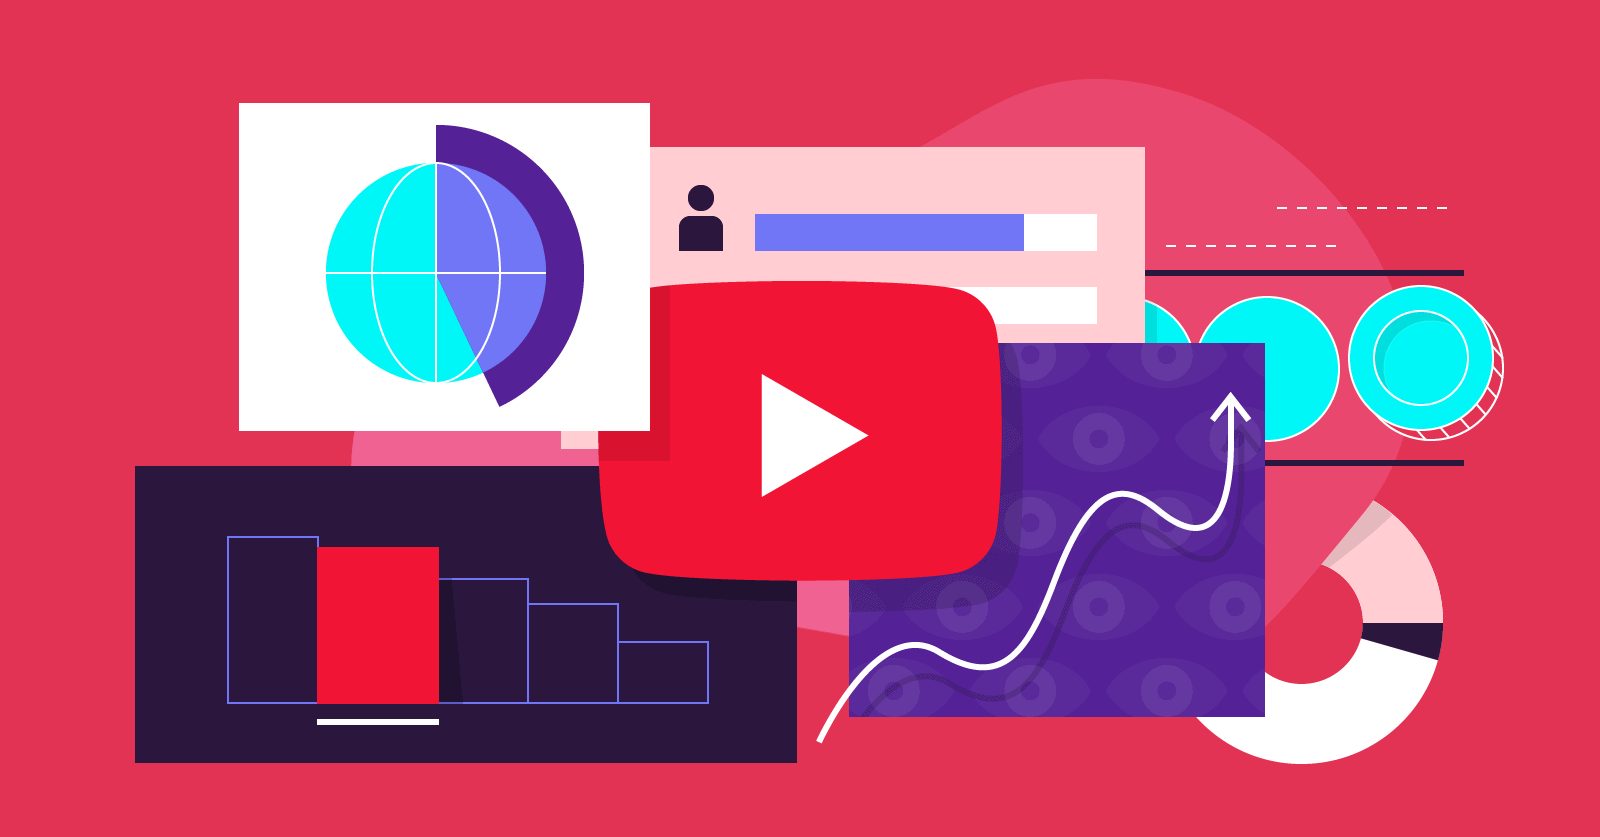 Πόσο εύκολο είναι να δημιουργήσουμε εισόδημα από το YouTube;